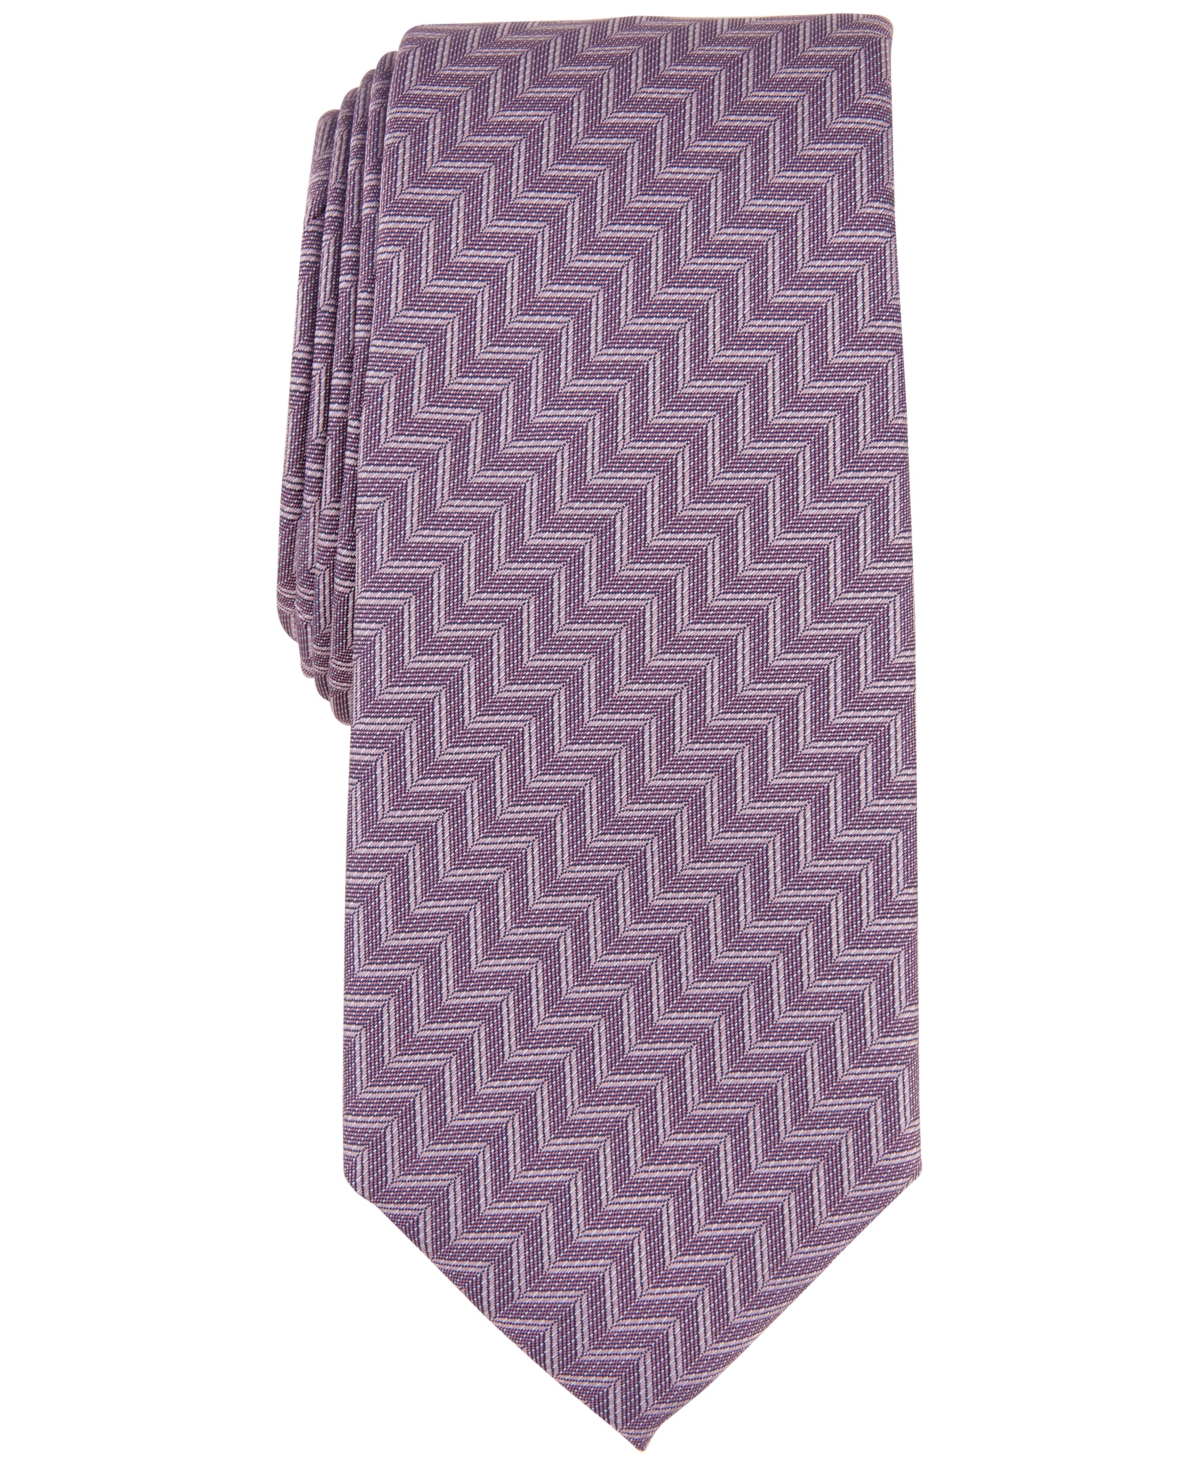 Men's Donovan Zig-Zag Tie, Created for Macy's - Pink